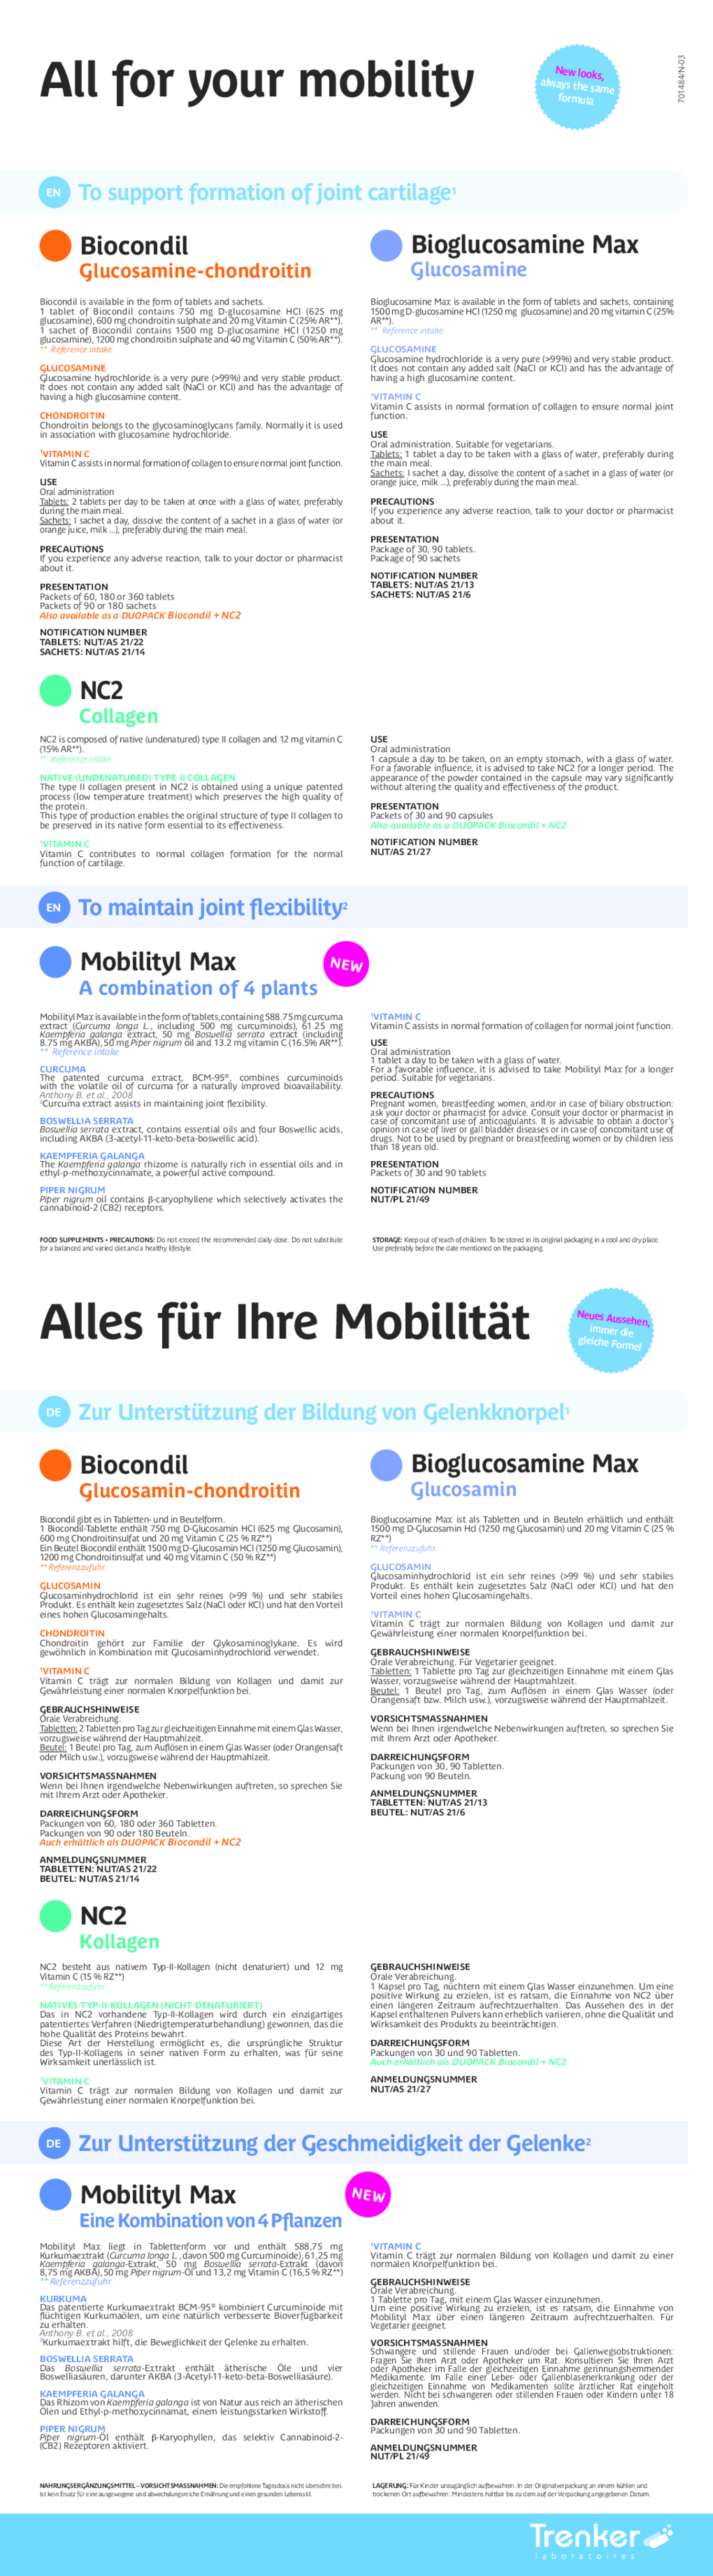 Mobilityl Max Tabletten afbeelding van document #2, gebruiksaanwijzing